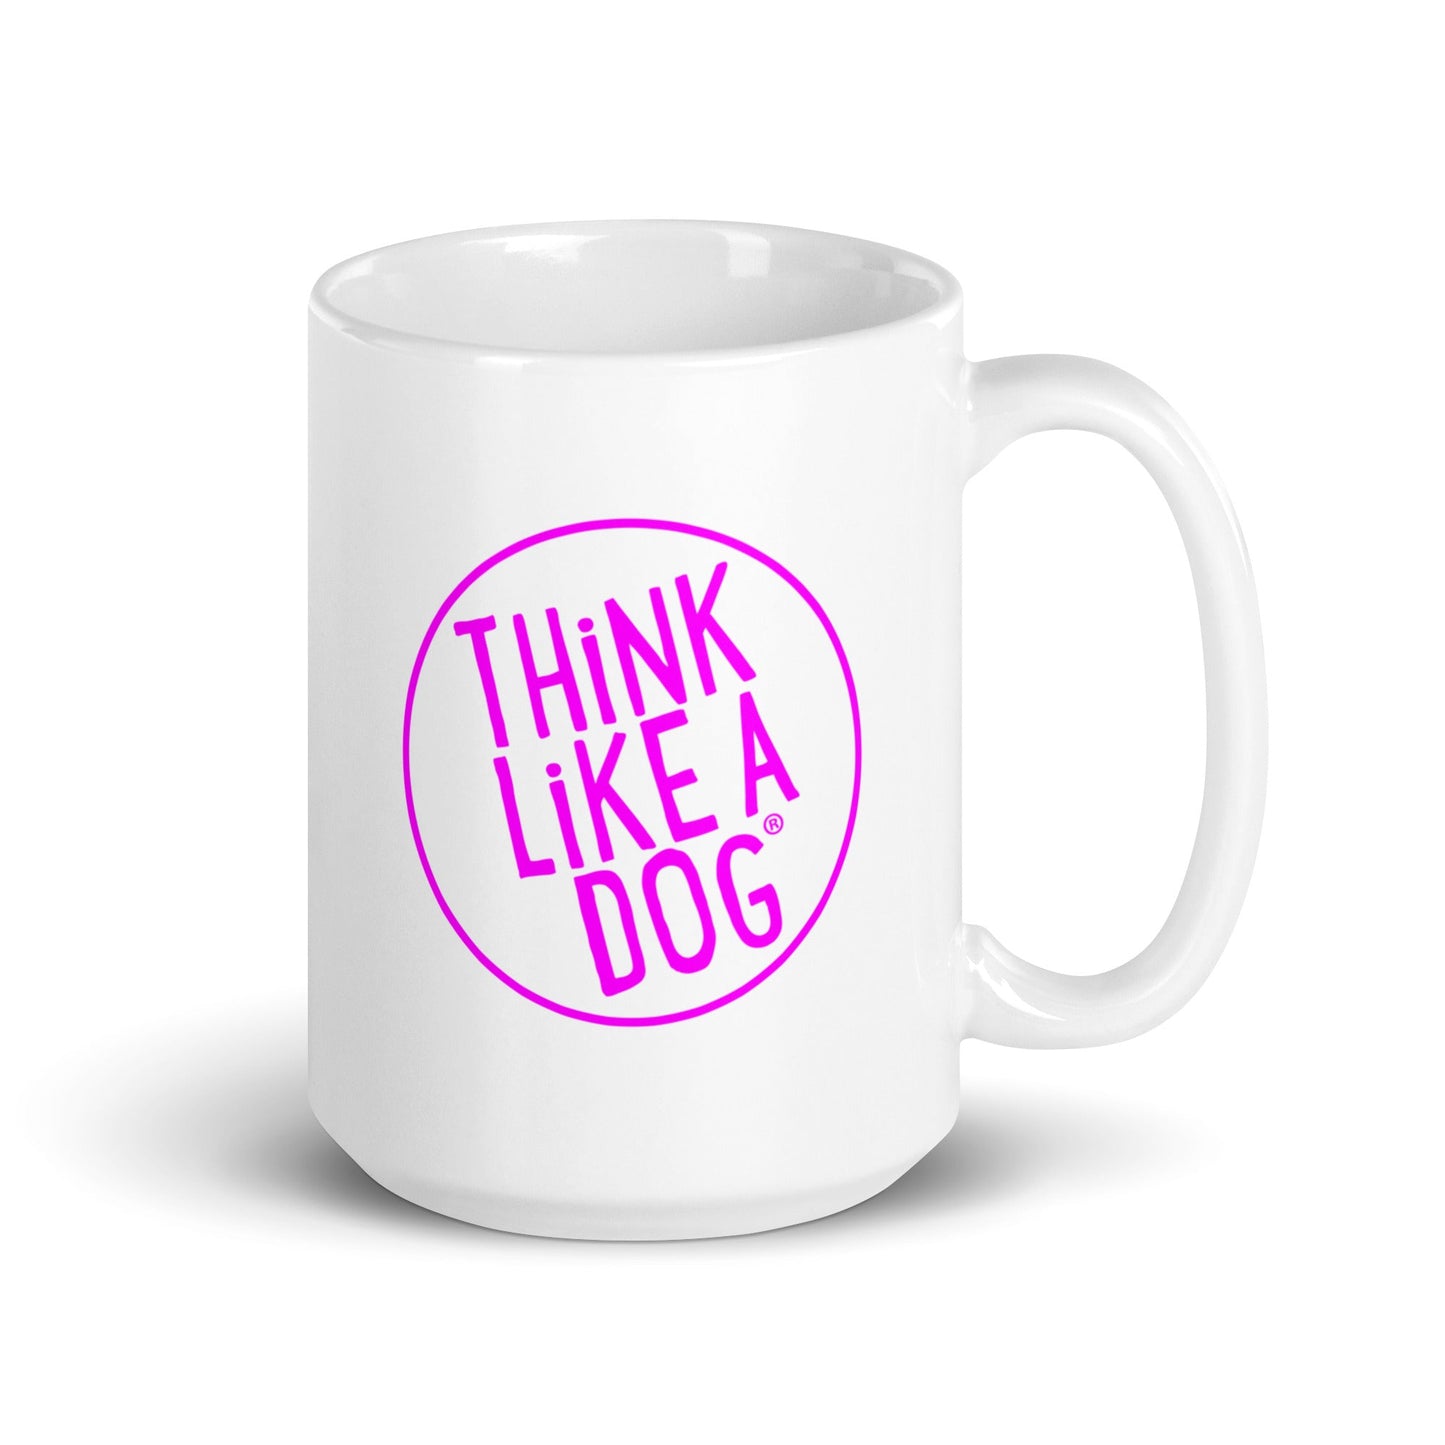 A THiNK LiKE A DOG® white glossy mug with the phrase “THiNK LiKE A DOG” inside a pink circle.